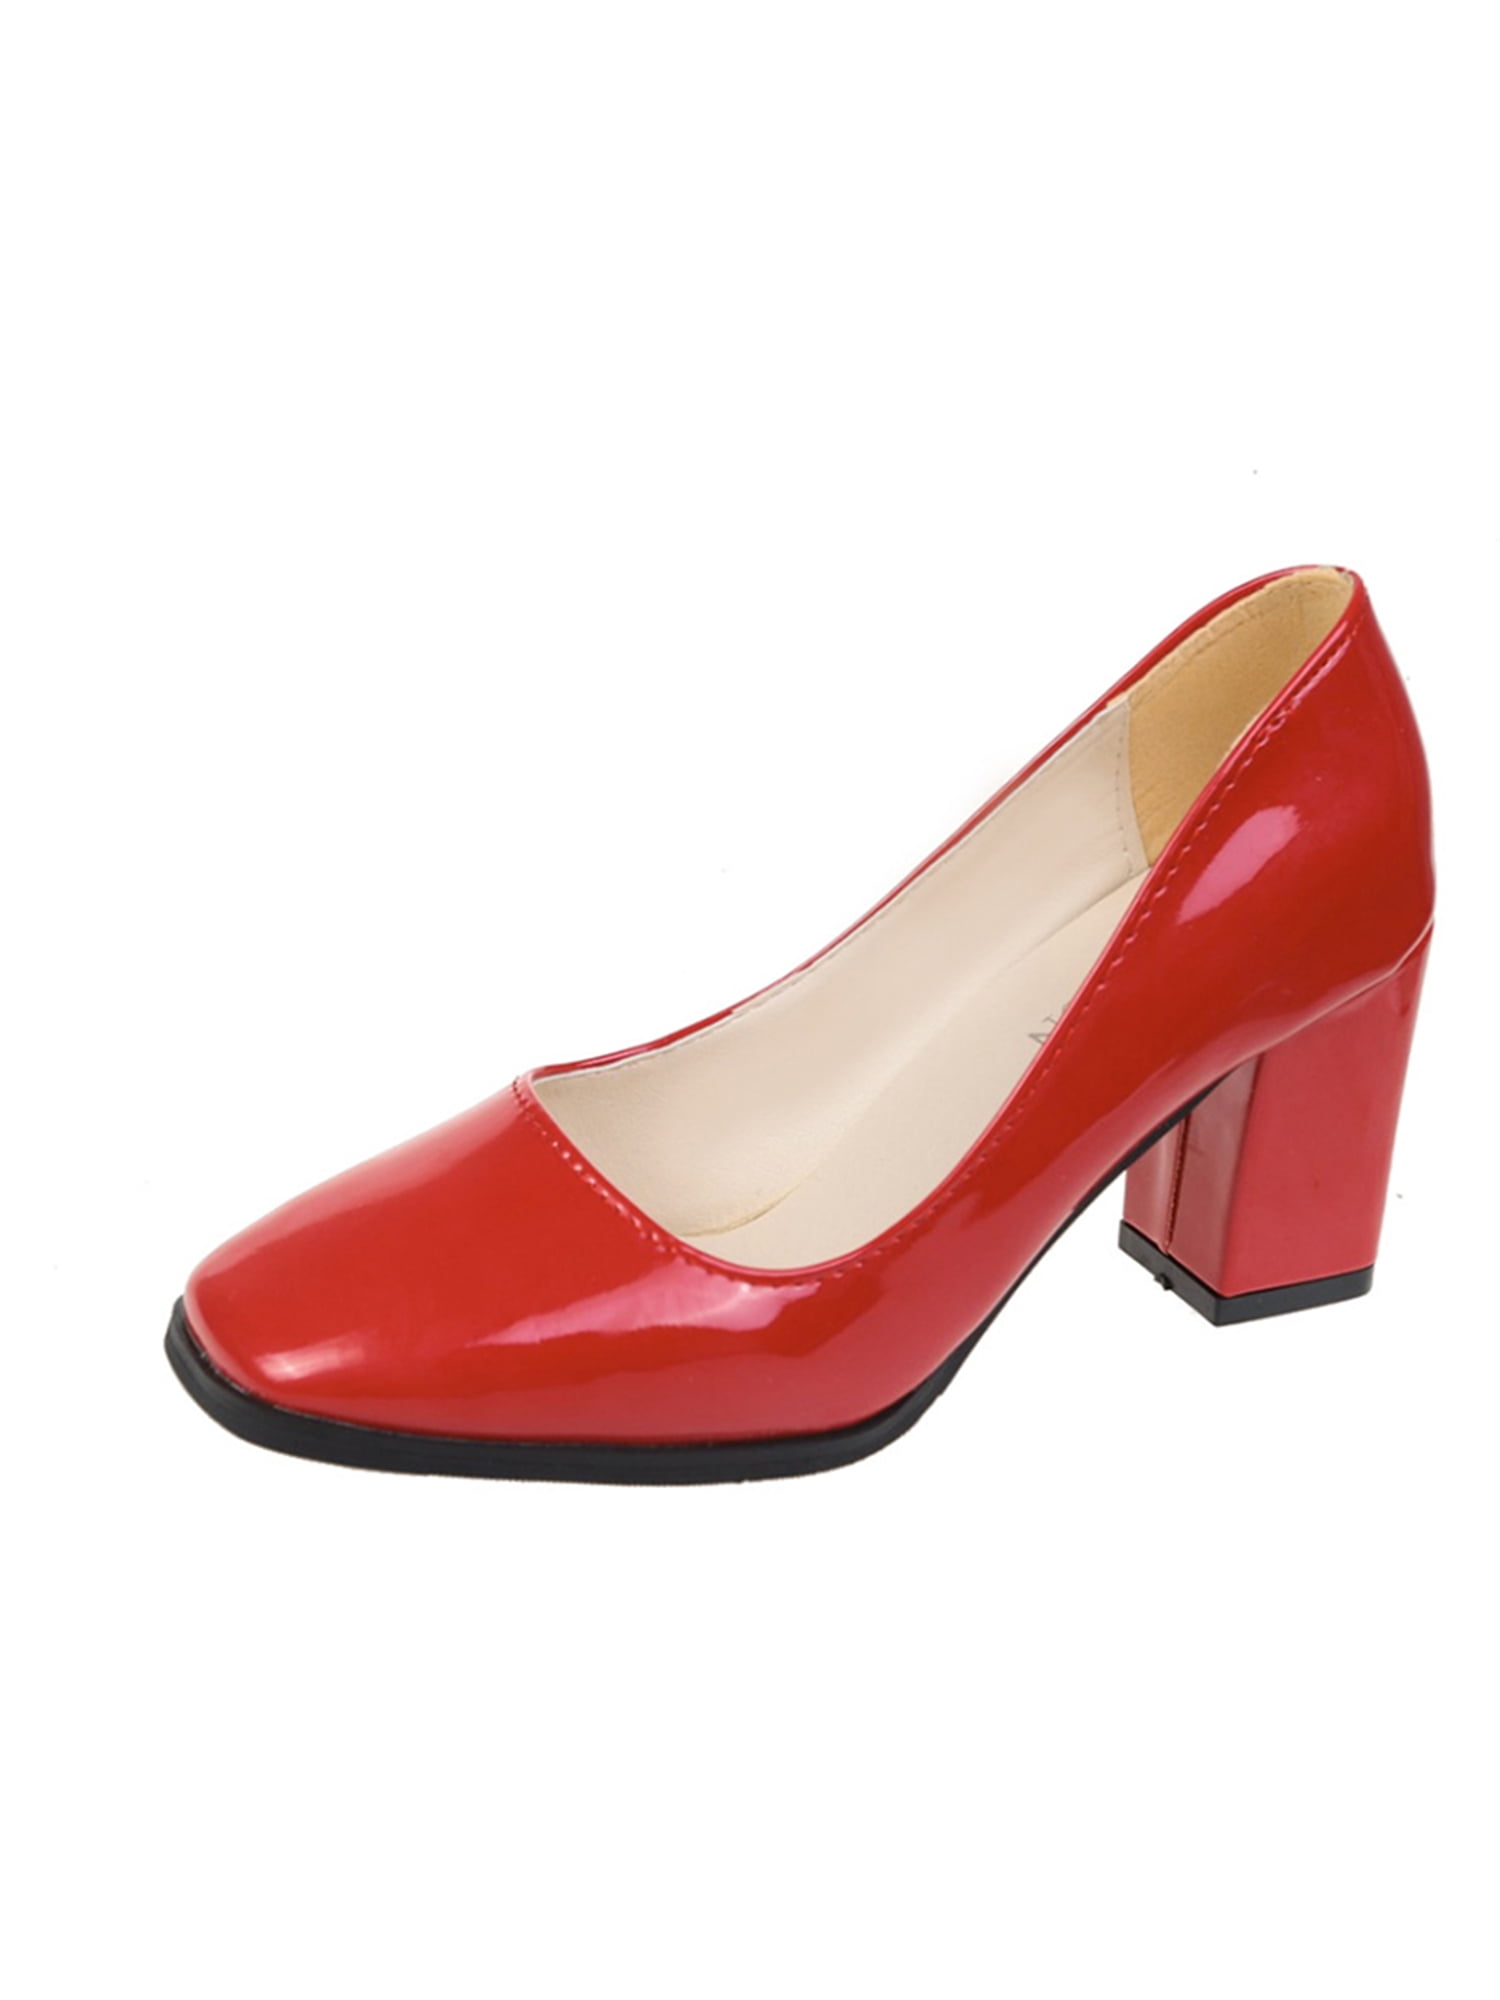 Block Heels | Buy Women Block Heels Shoes Online in Nigeria | Sojoee-thanhphatduhoc.com.vn